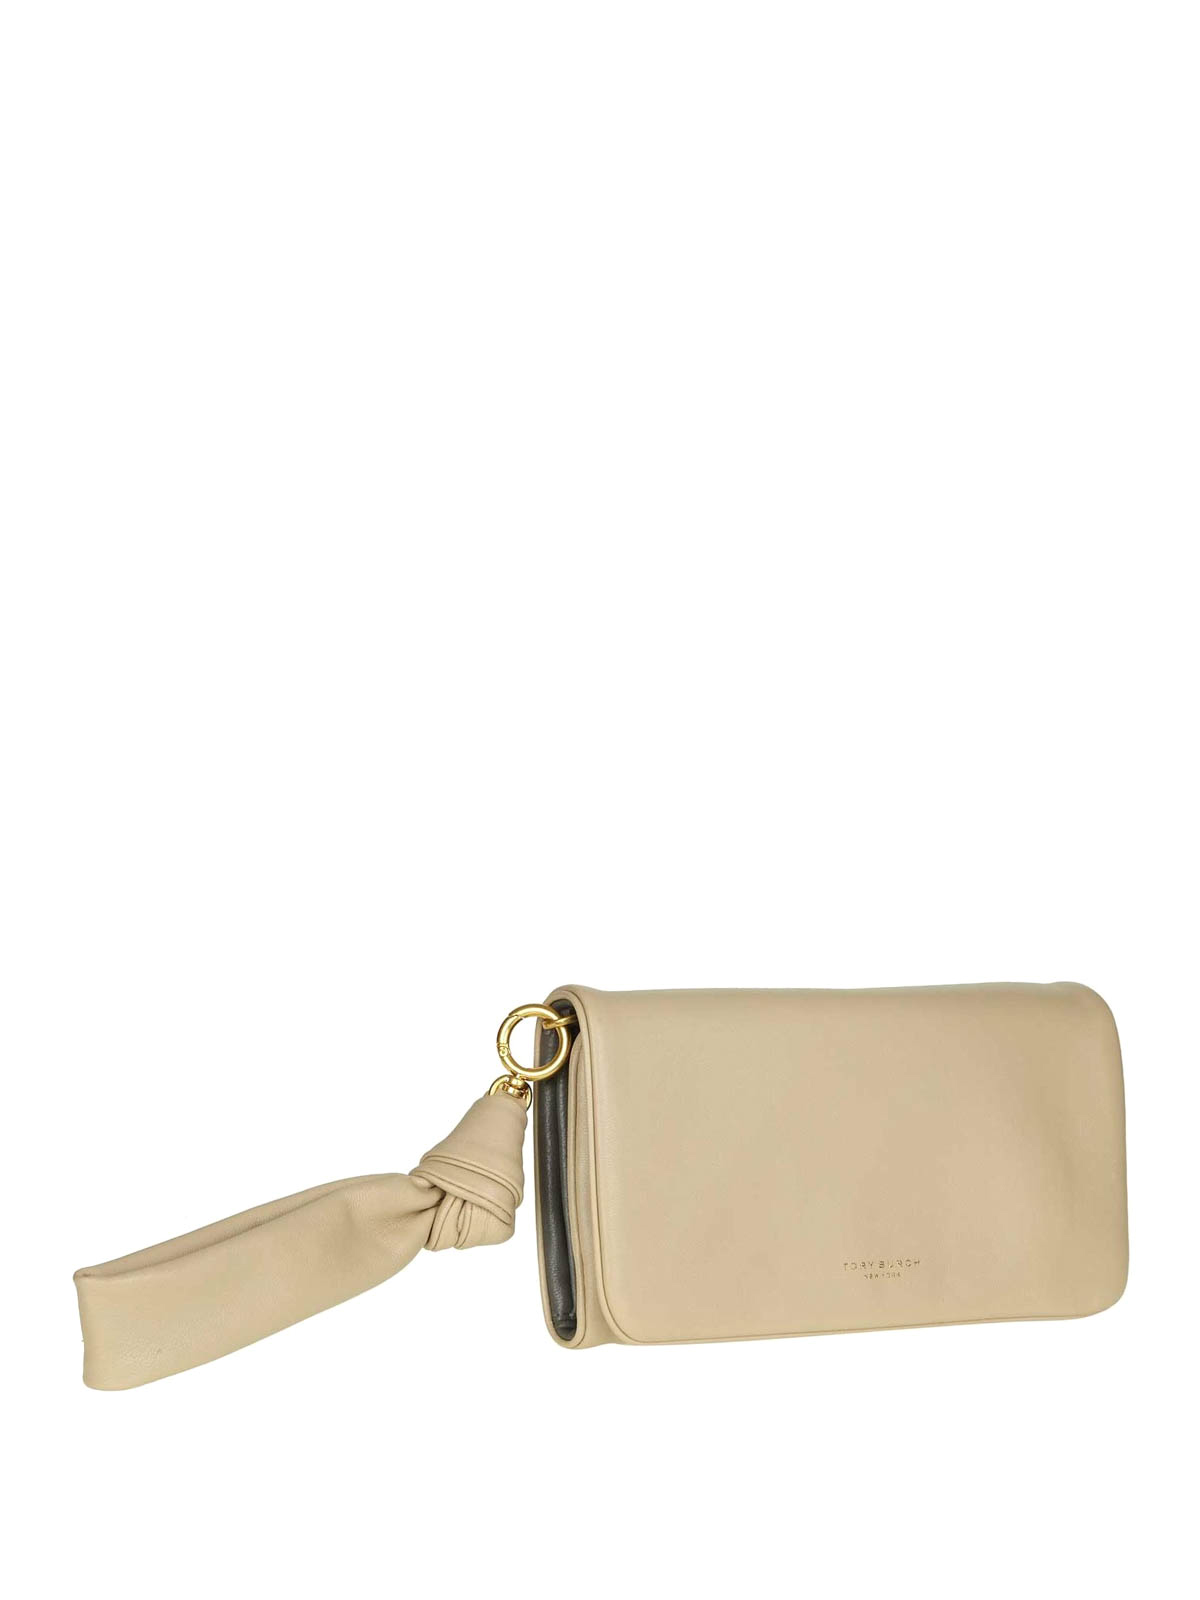 Wallets & purses Tory Burch - Wristlet light beige leather wallet - 50352262